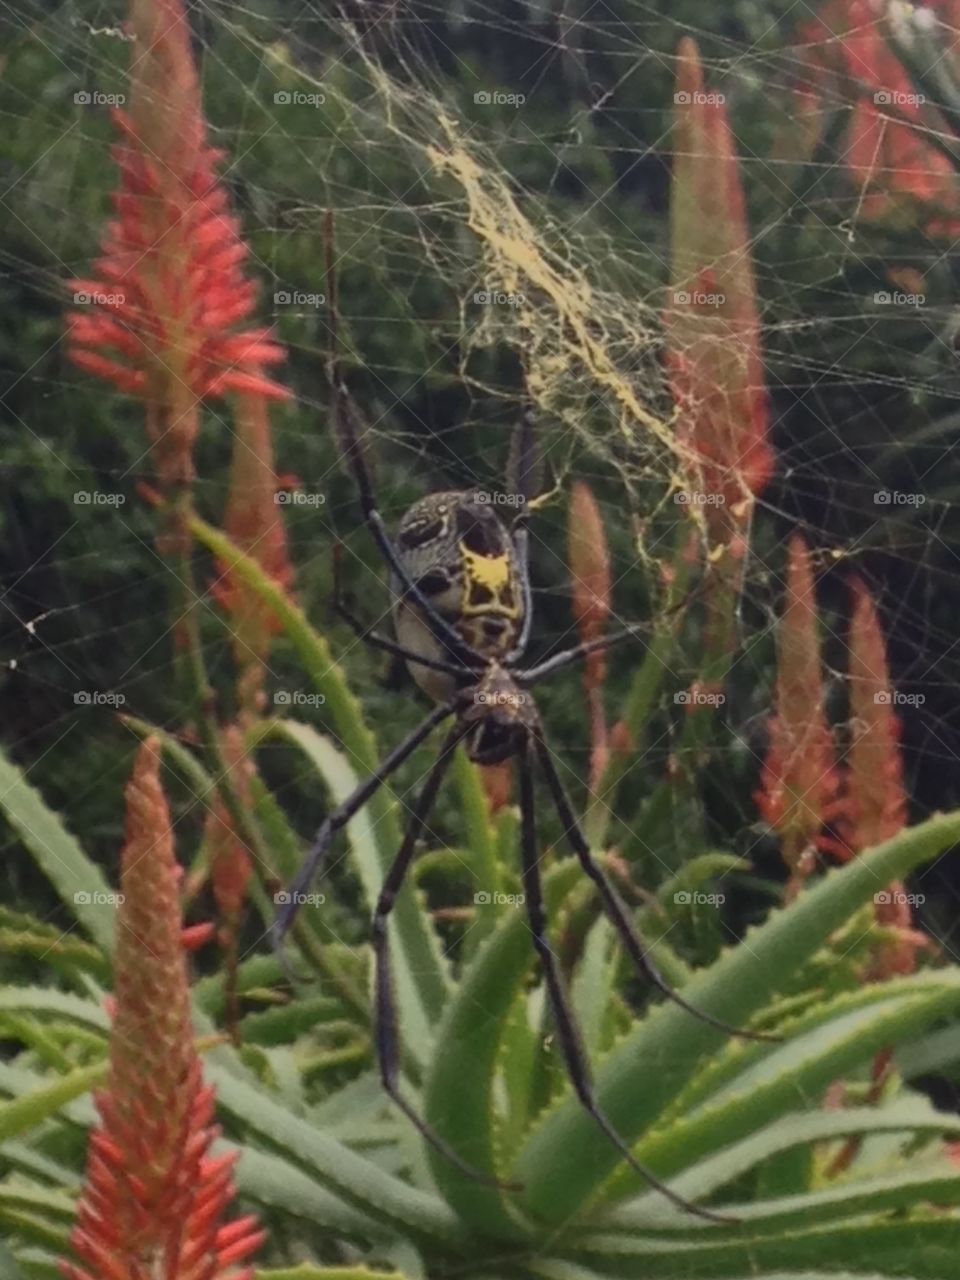 Golden orb spider